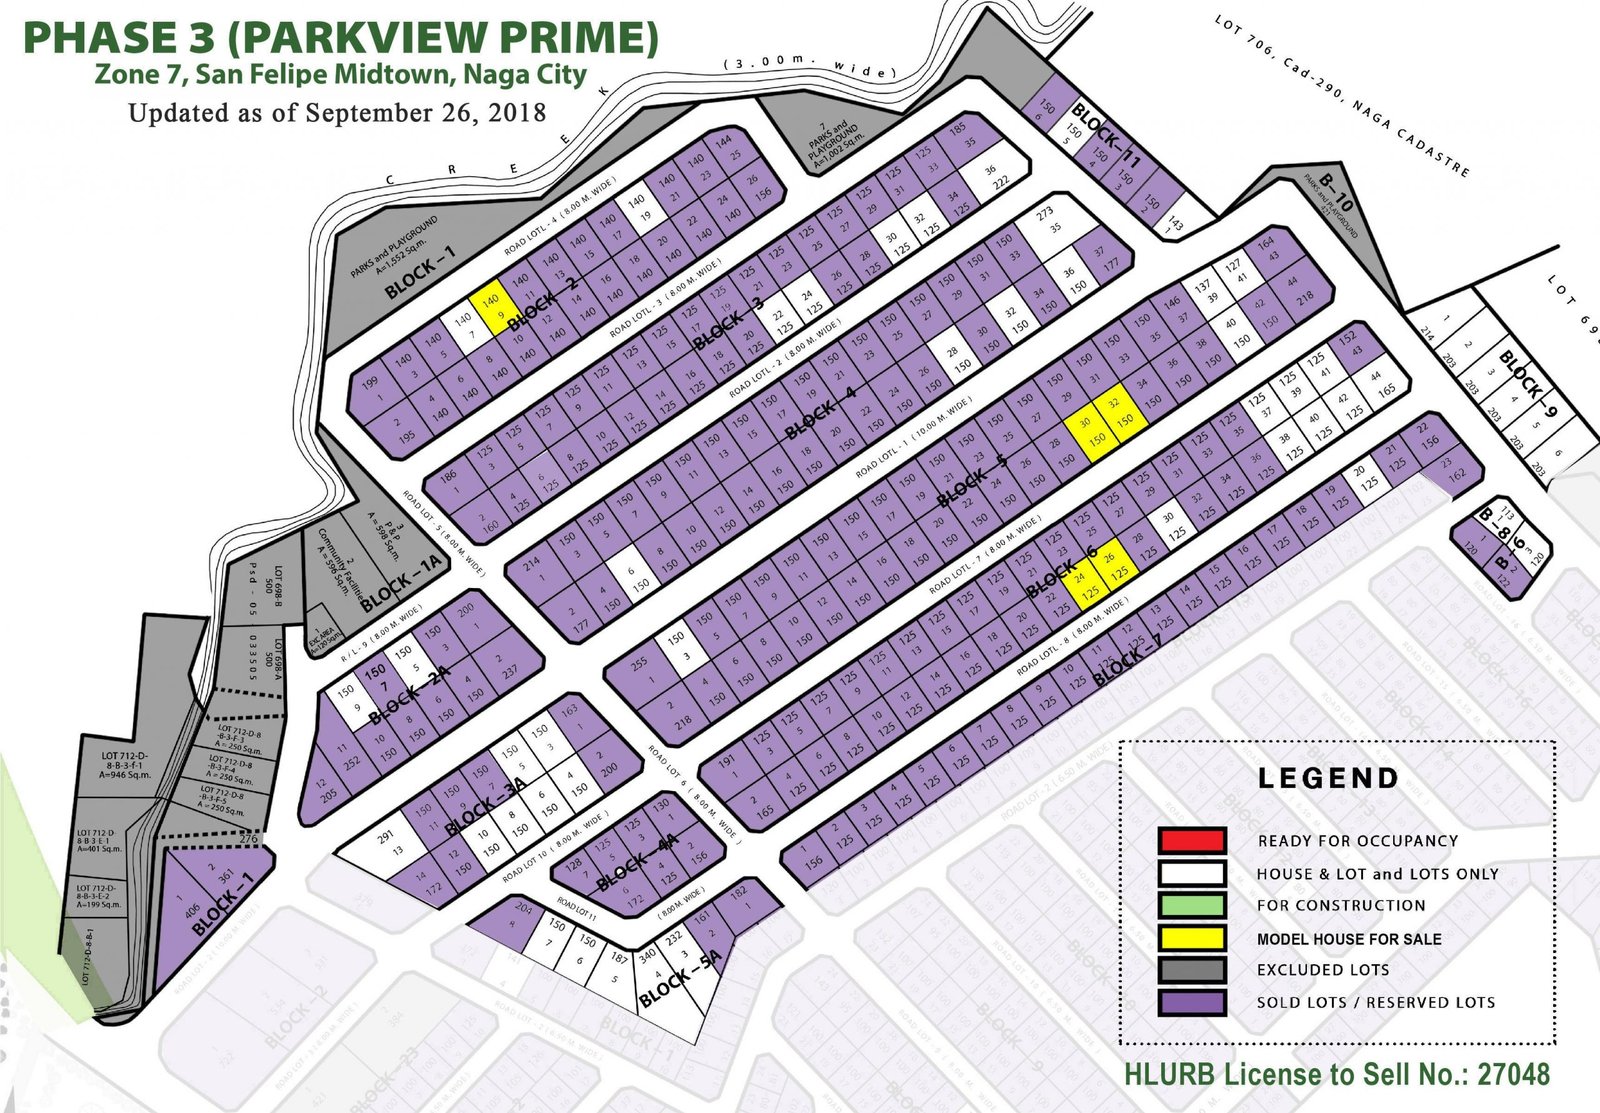 parkview village prime site map